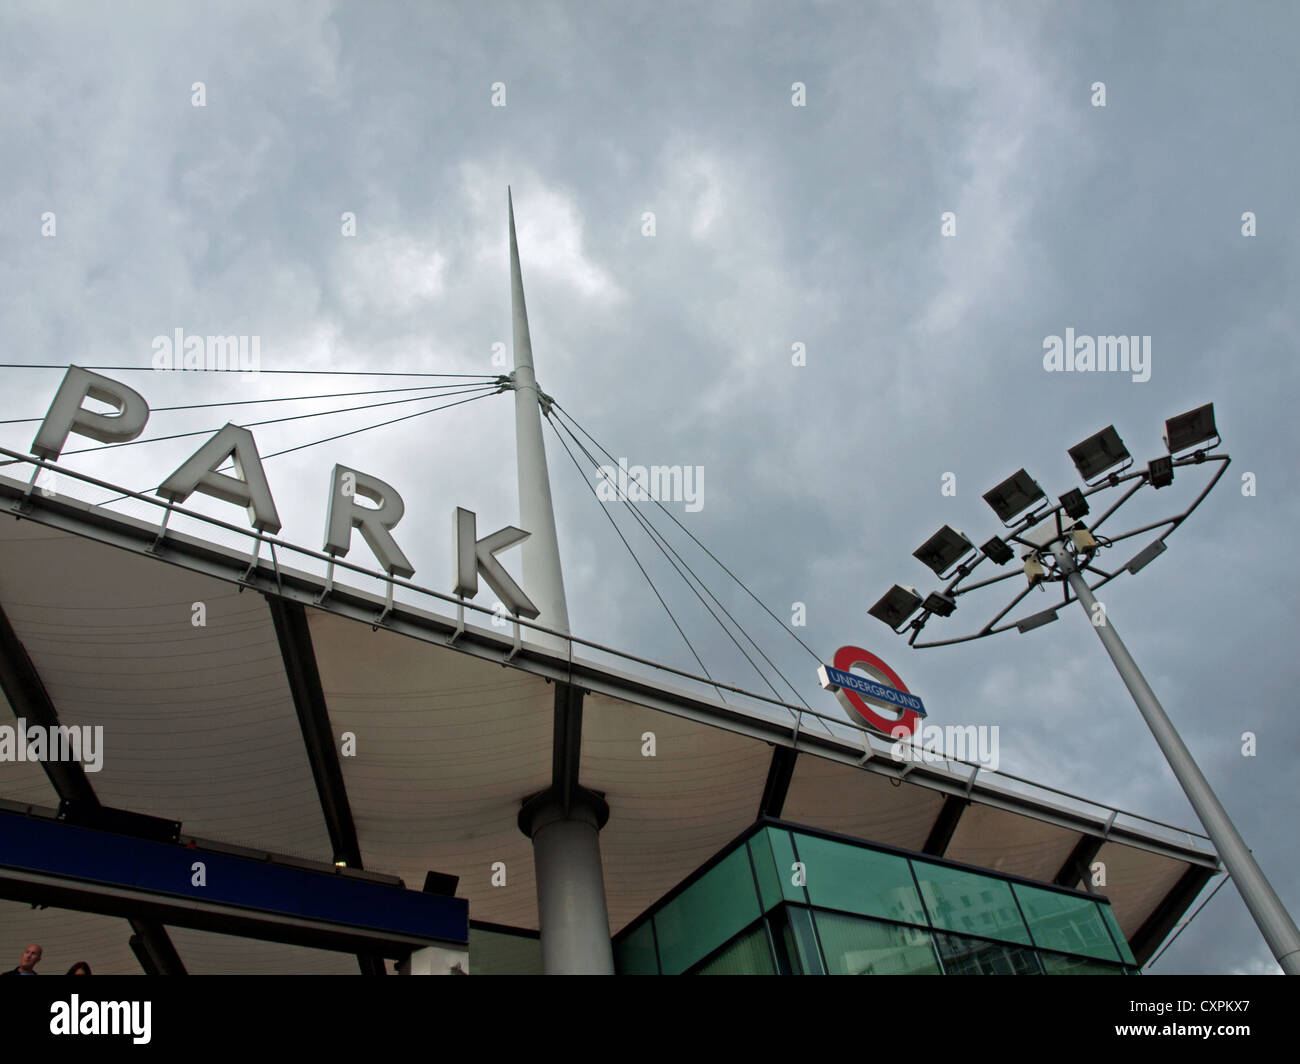 Dettaglio della stazione di Wembley vicino al Wembley Stadium in un giorno nuvoloso. Foto Stock